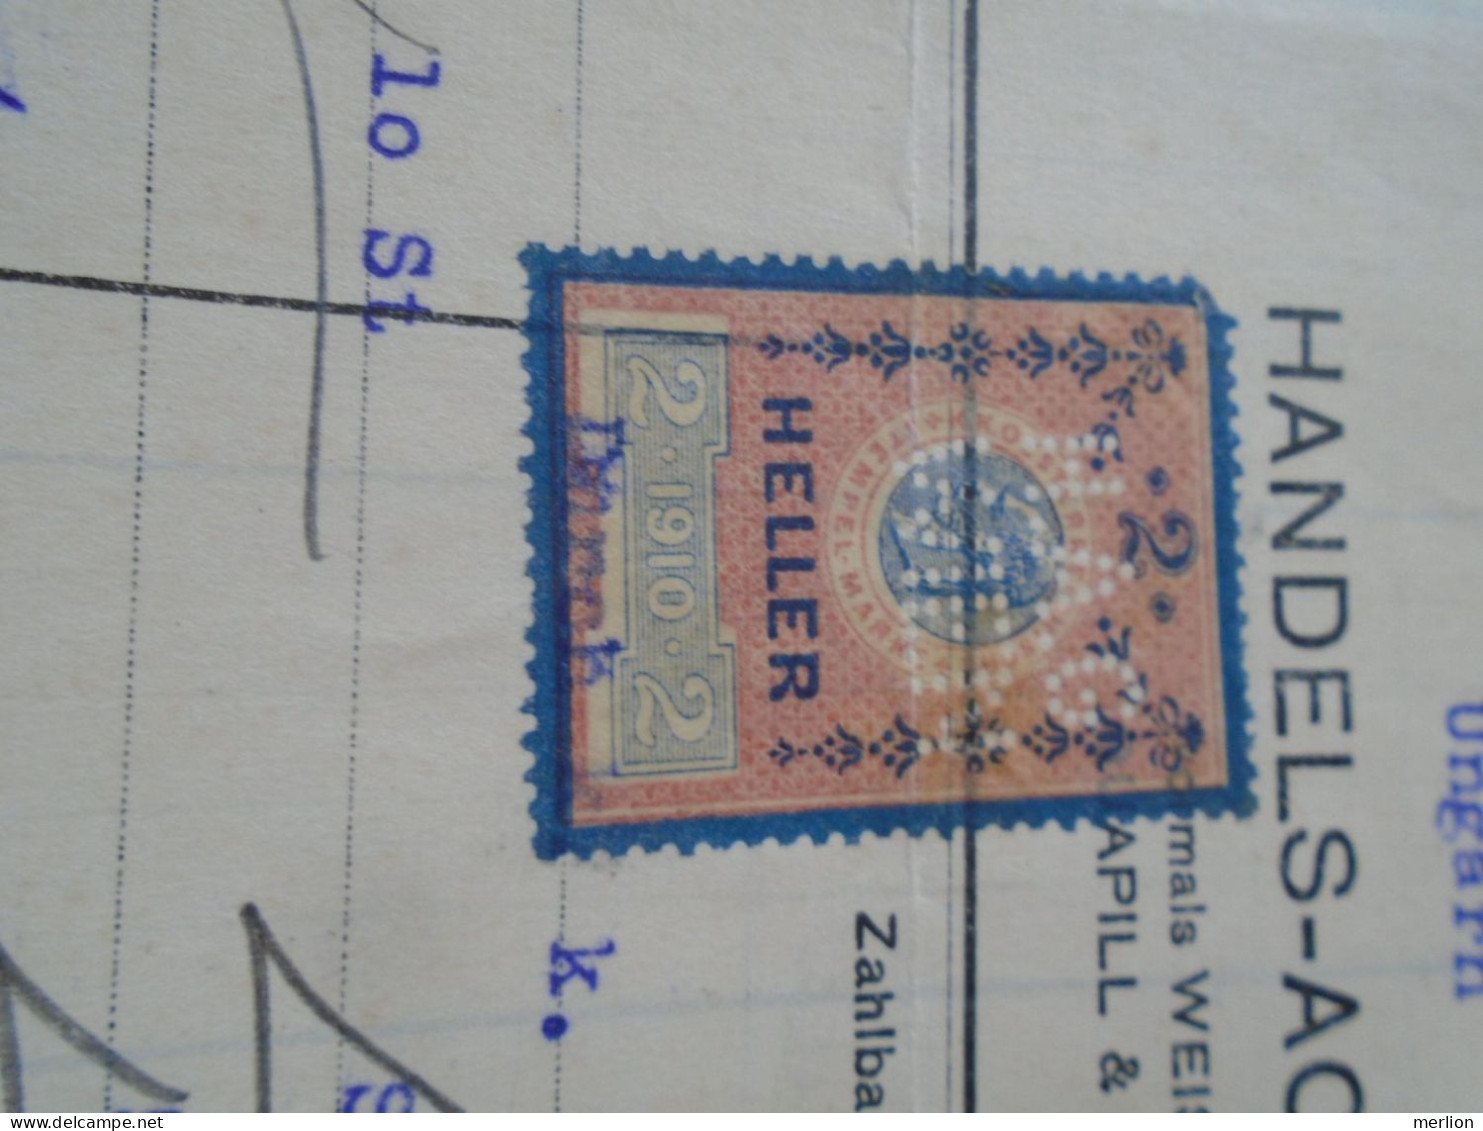 ZA470.29 Old Invoice  Austria -Handels-Actien Ges. WIEN 1914 Sent To Nandor LANTZ Temesszépfalu Banat Hungary Romania - Autriche